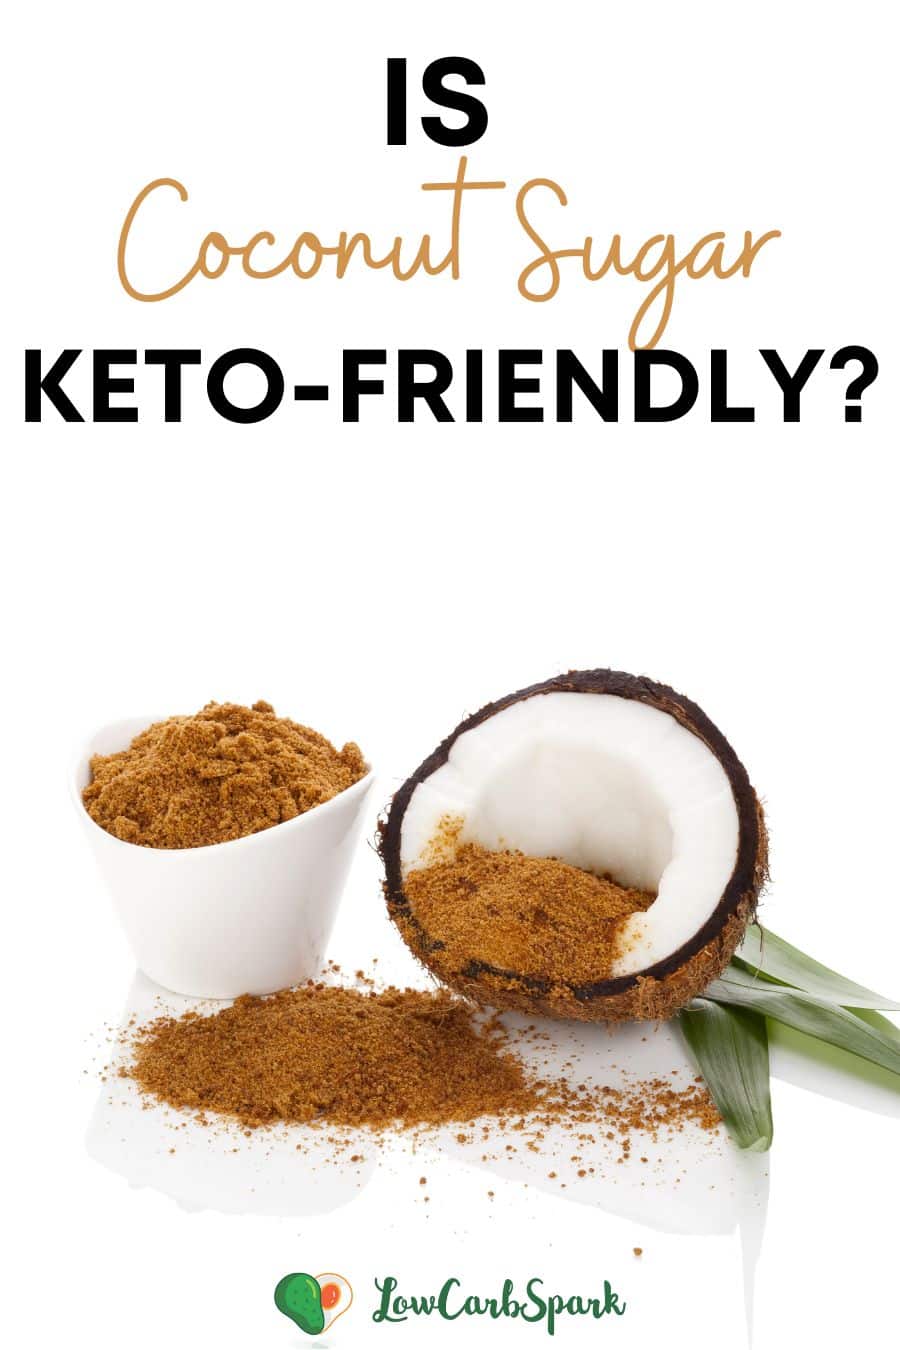 Is Coconut Sugar Keto?